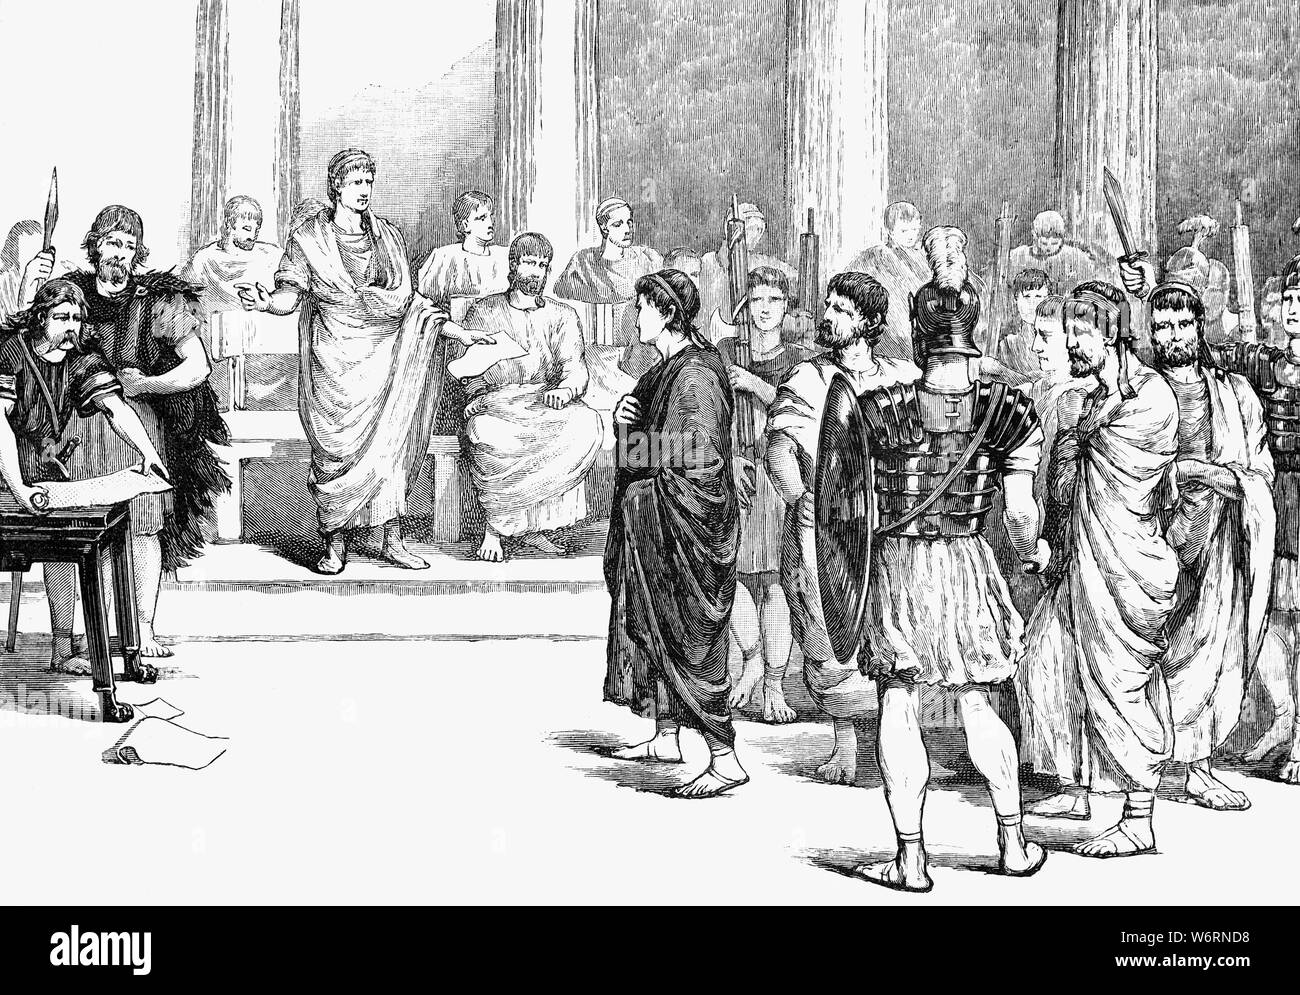 Les conspirateurs Catilinarian devant le Sénat. Ils comprenaient Lucius Sergius Catilina (108-62) de BCE, sénateur romain du 1er siècle avant J.-C. qui conçu le tracé avec l'aide d'un groupe d'aristocrates et d'anciens combattants mécontents, pour renverser la république romaine en 63 avant JC. Cicéron exposés la parcelle, qui a obligé de fuir Rome Catilina. Les cinq conspirateurs ont été condamnés à mort mais craignant que d'autres conspirateurs pourraient essayer de les libérer, Cicéron avait eux étranglé dans le Tullianum immédiatement et une fin a été faite à la conspiration à Rome. Banque D'Images